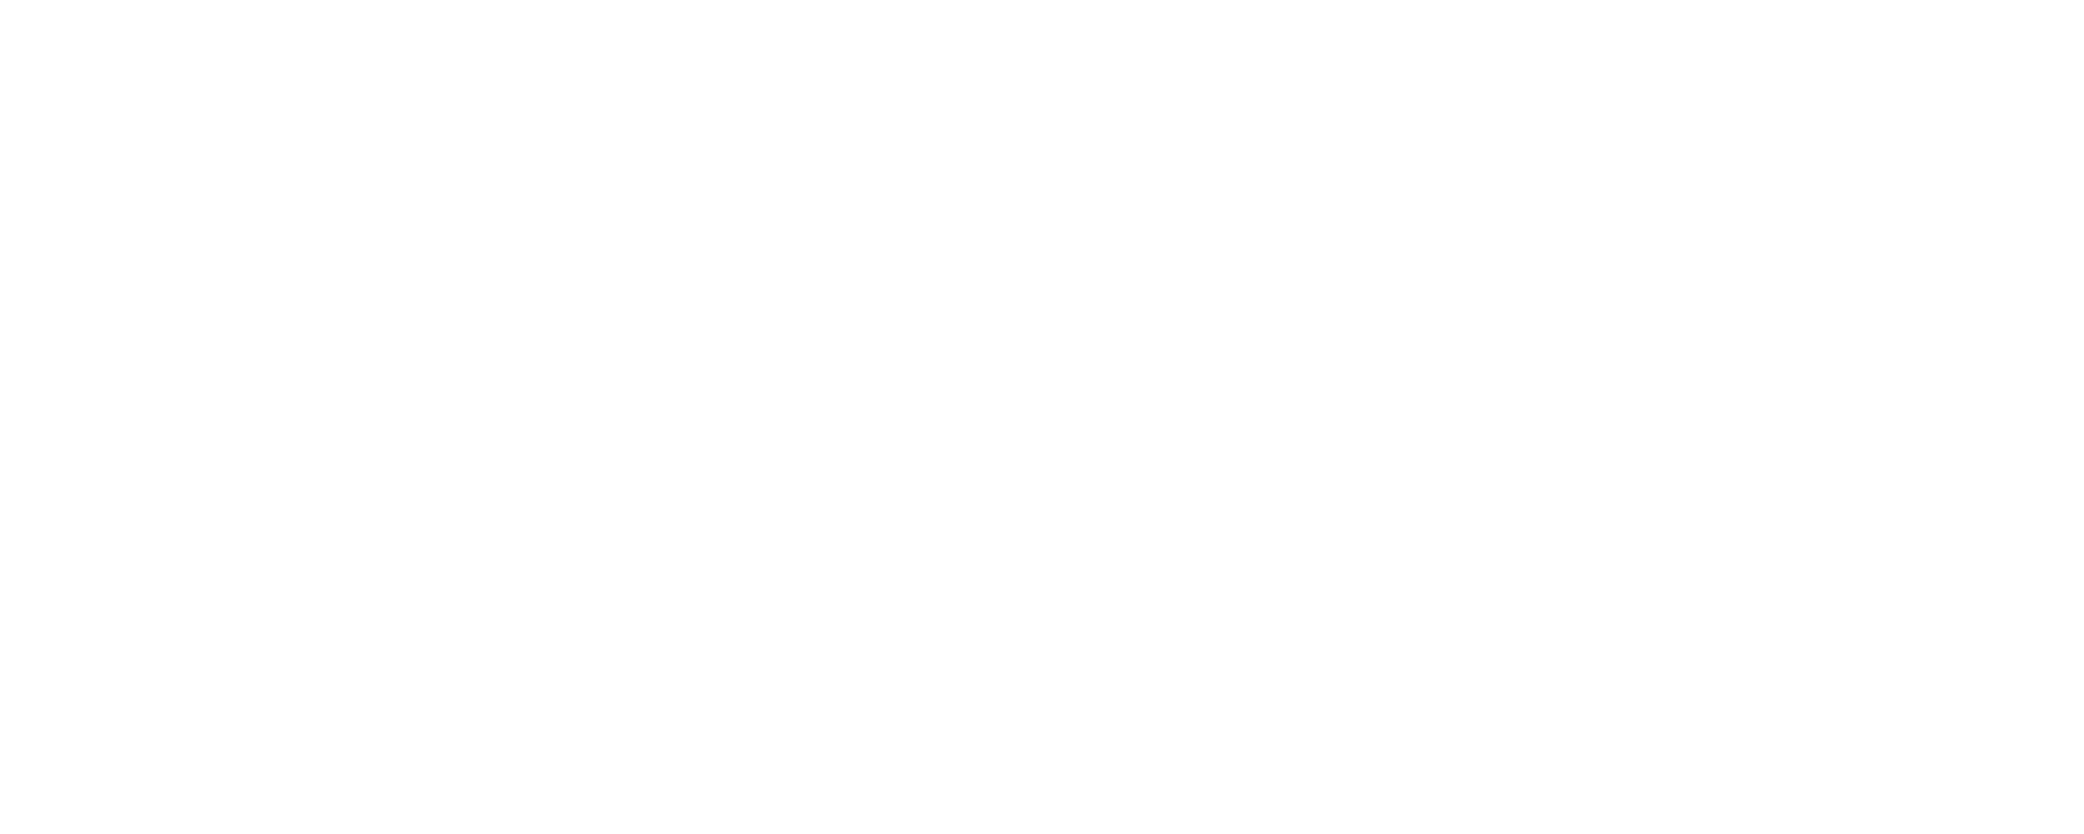 Duke Energy White 2 logo